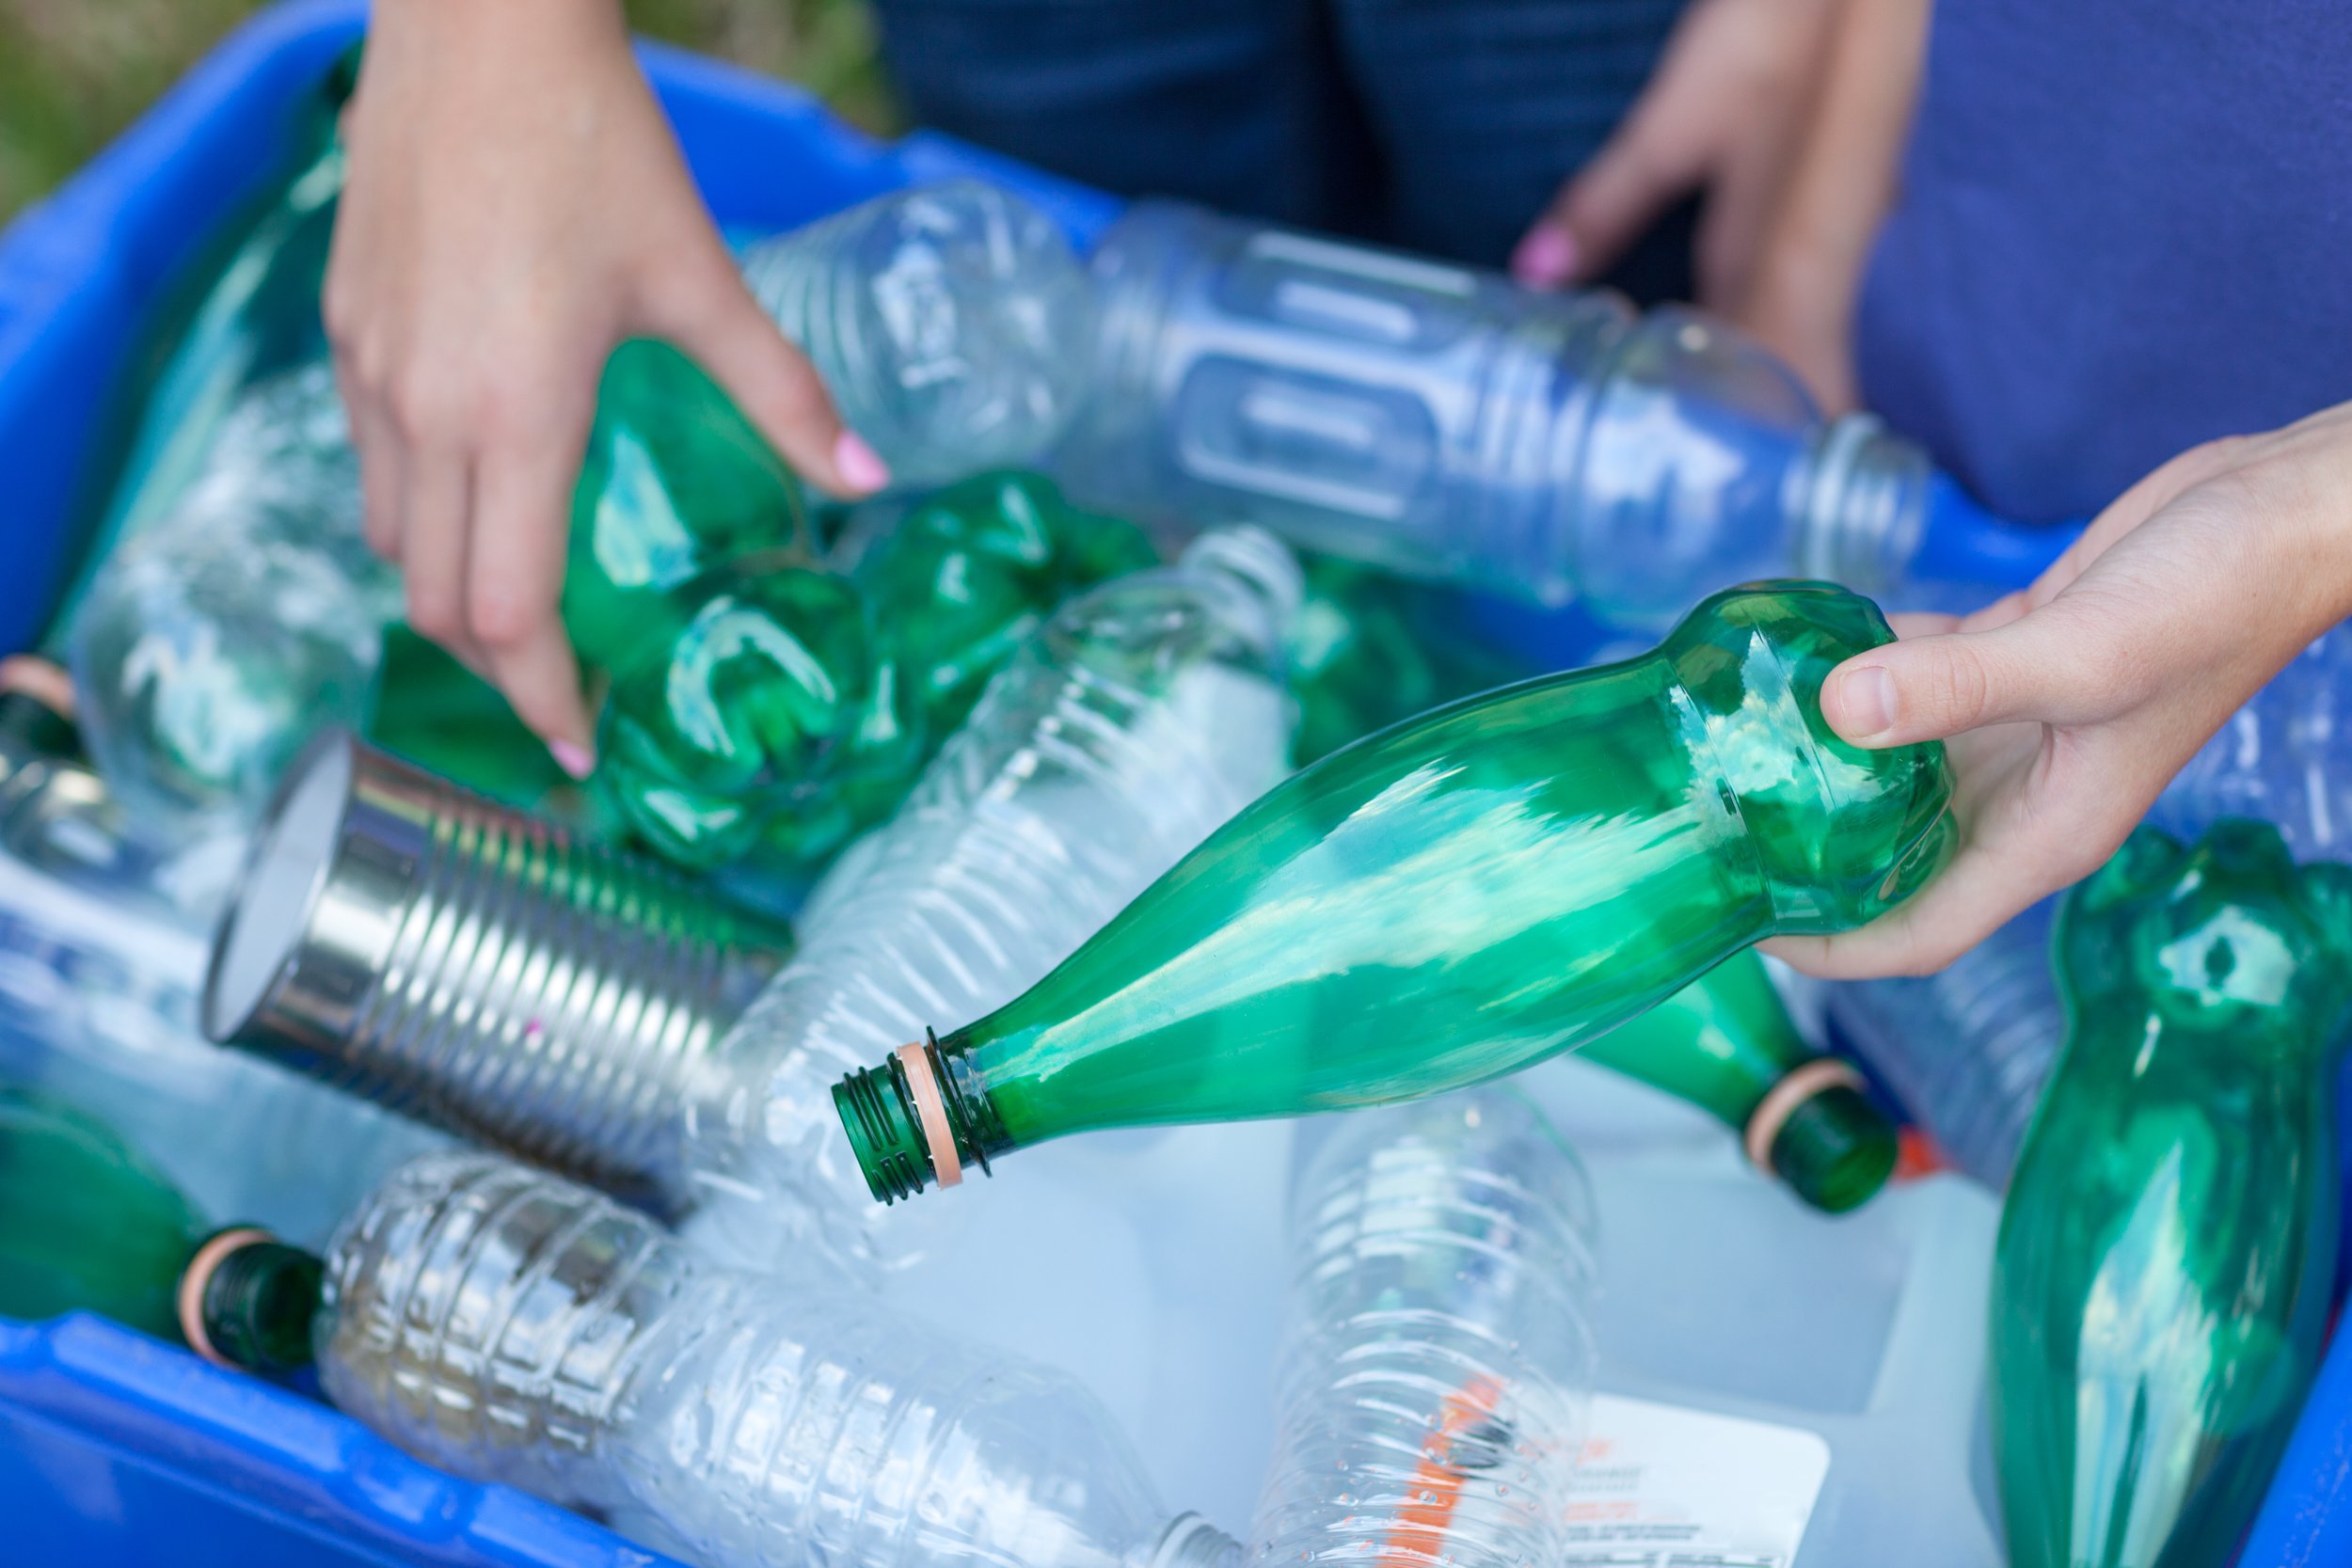 Где сдать пластиковые бутылки в москве. Пластиковая бутылка. Пустая пластиковая бутылка. Утилизация пластиковых бутылок. Переработка пластиковых бутылок.